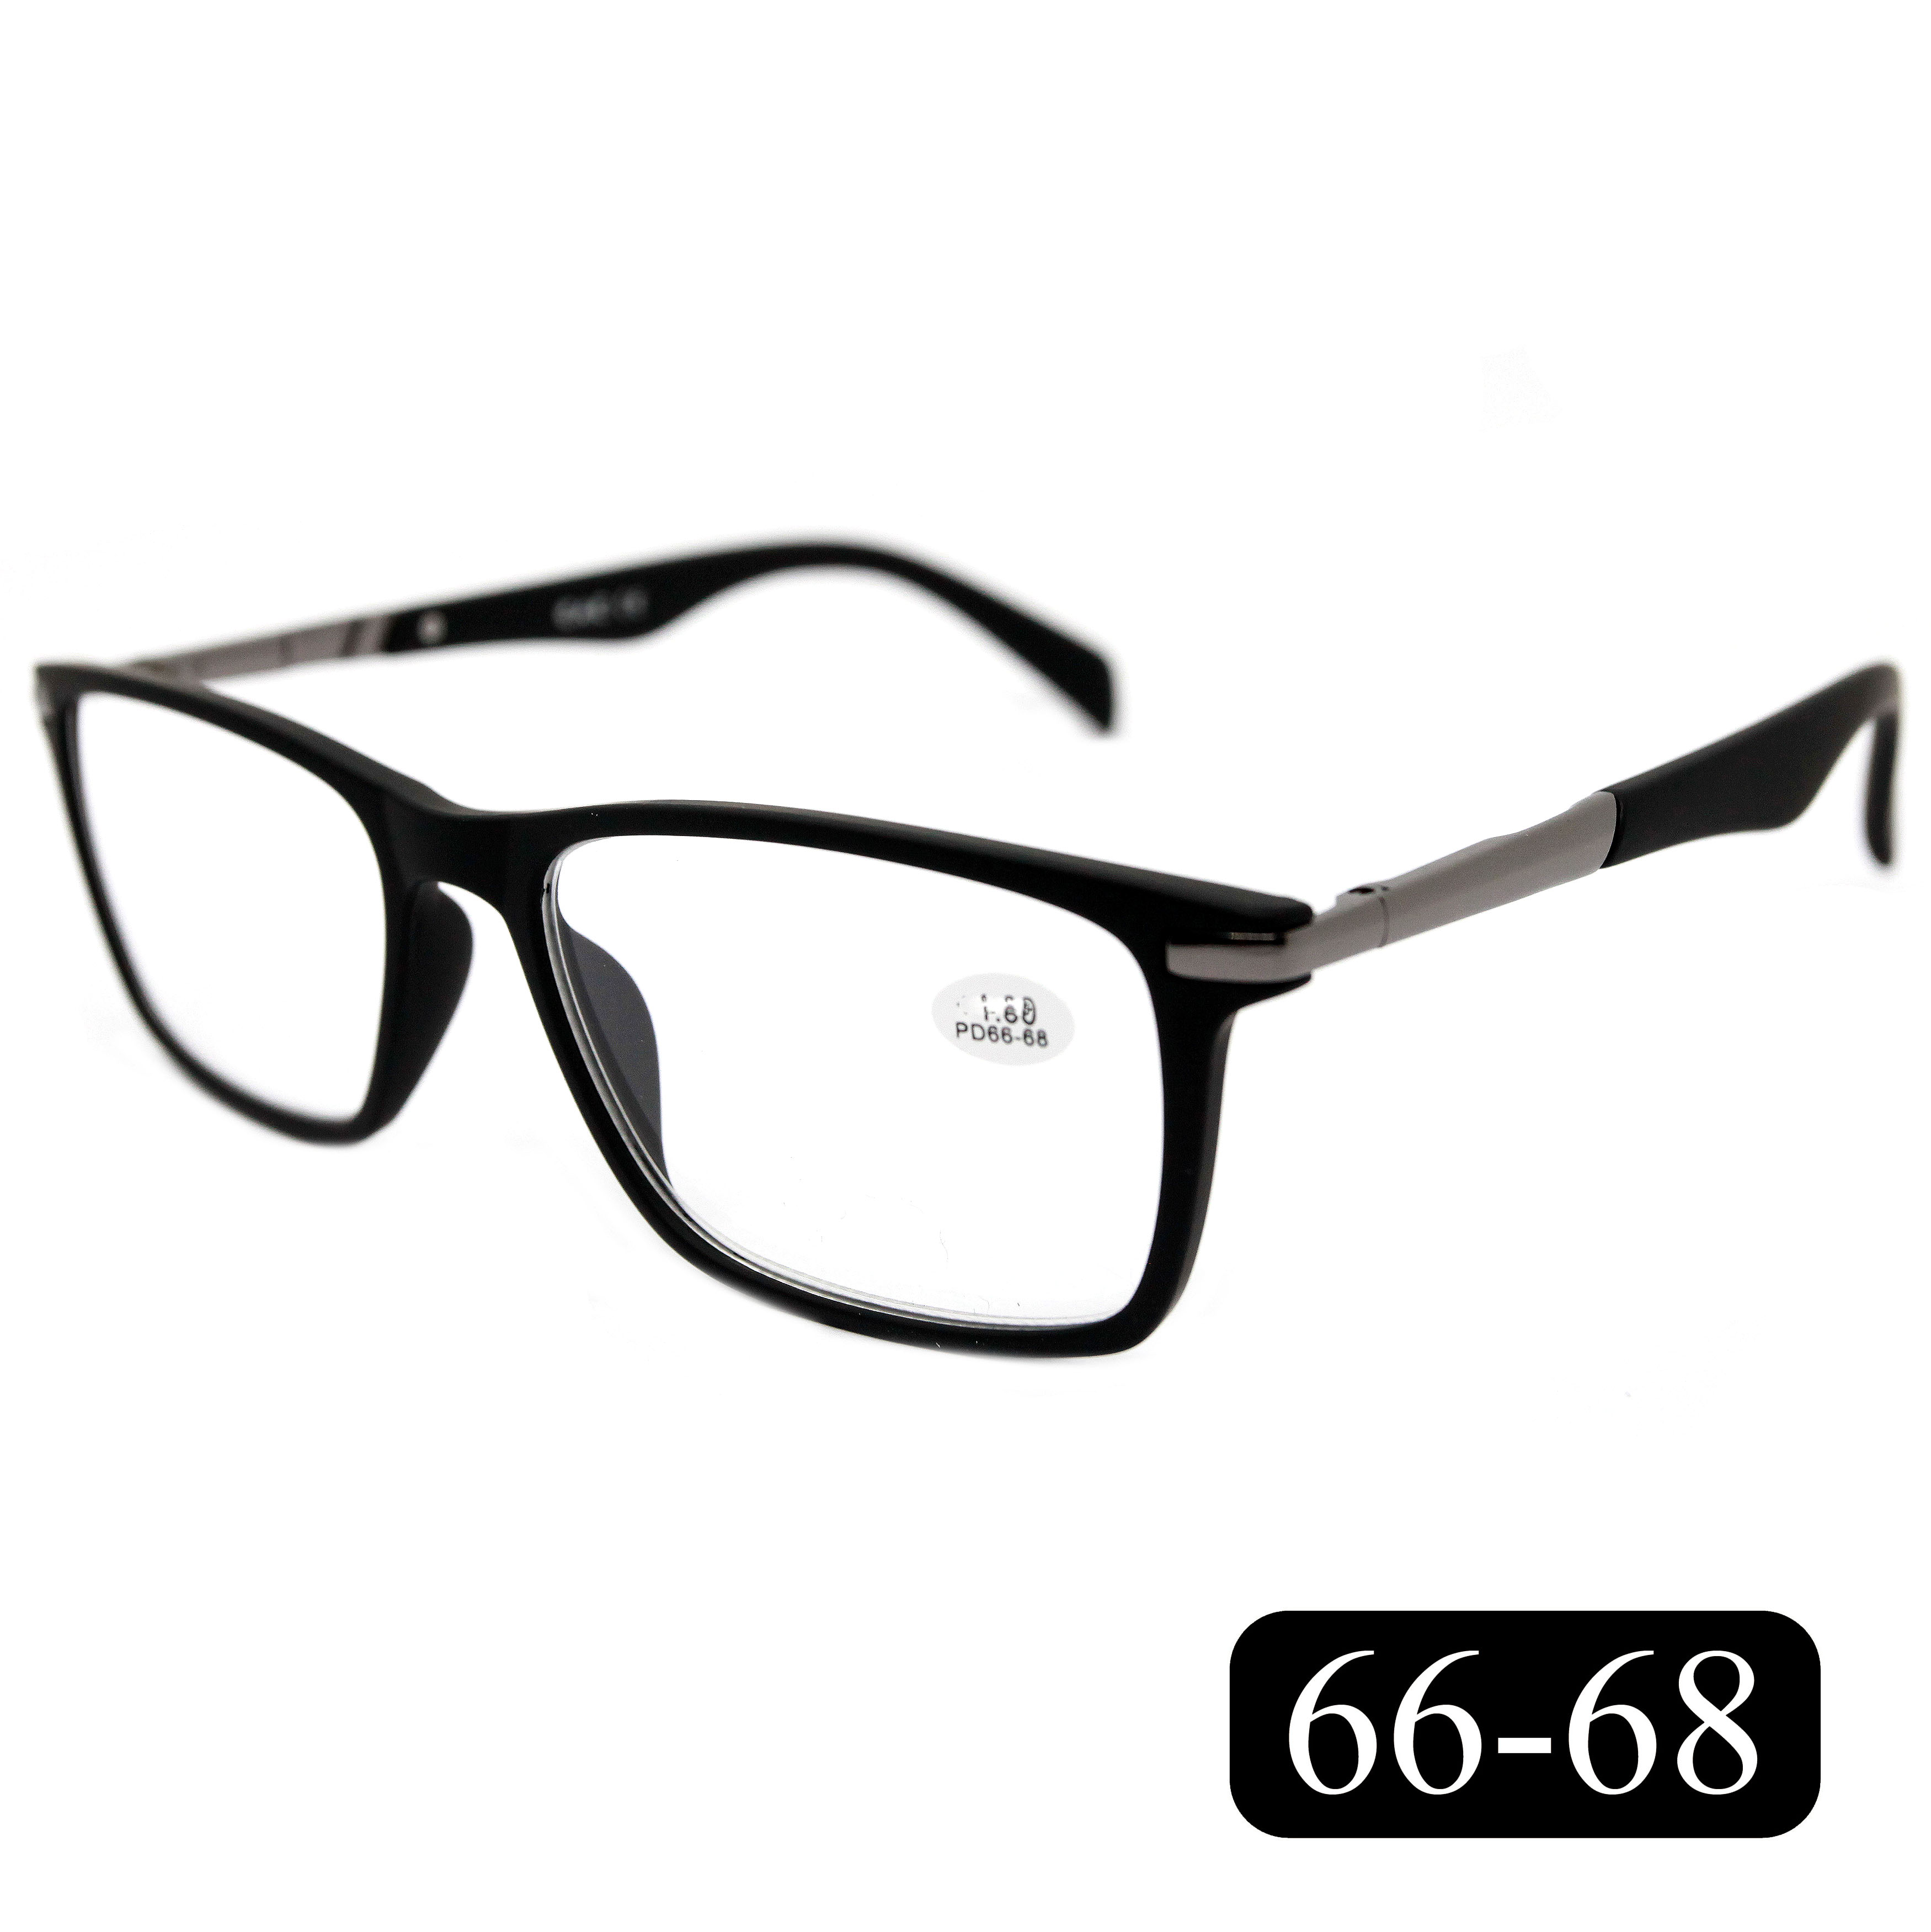 Готовые очки EAE 2177 +7.00, без футляра, цвет черный, РЦ 66-68